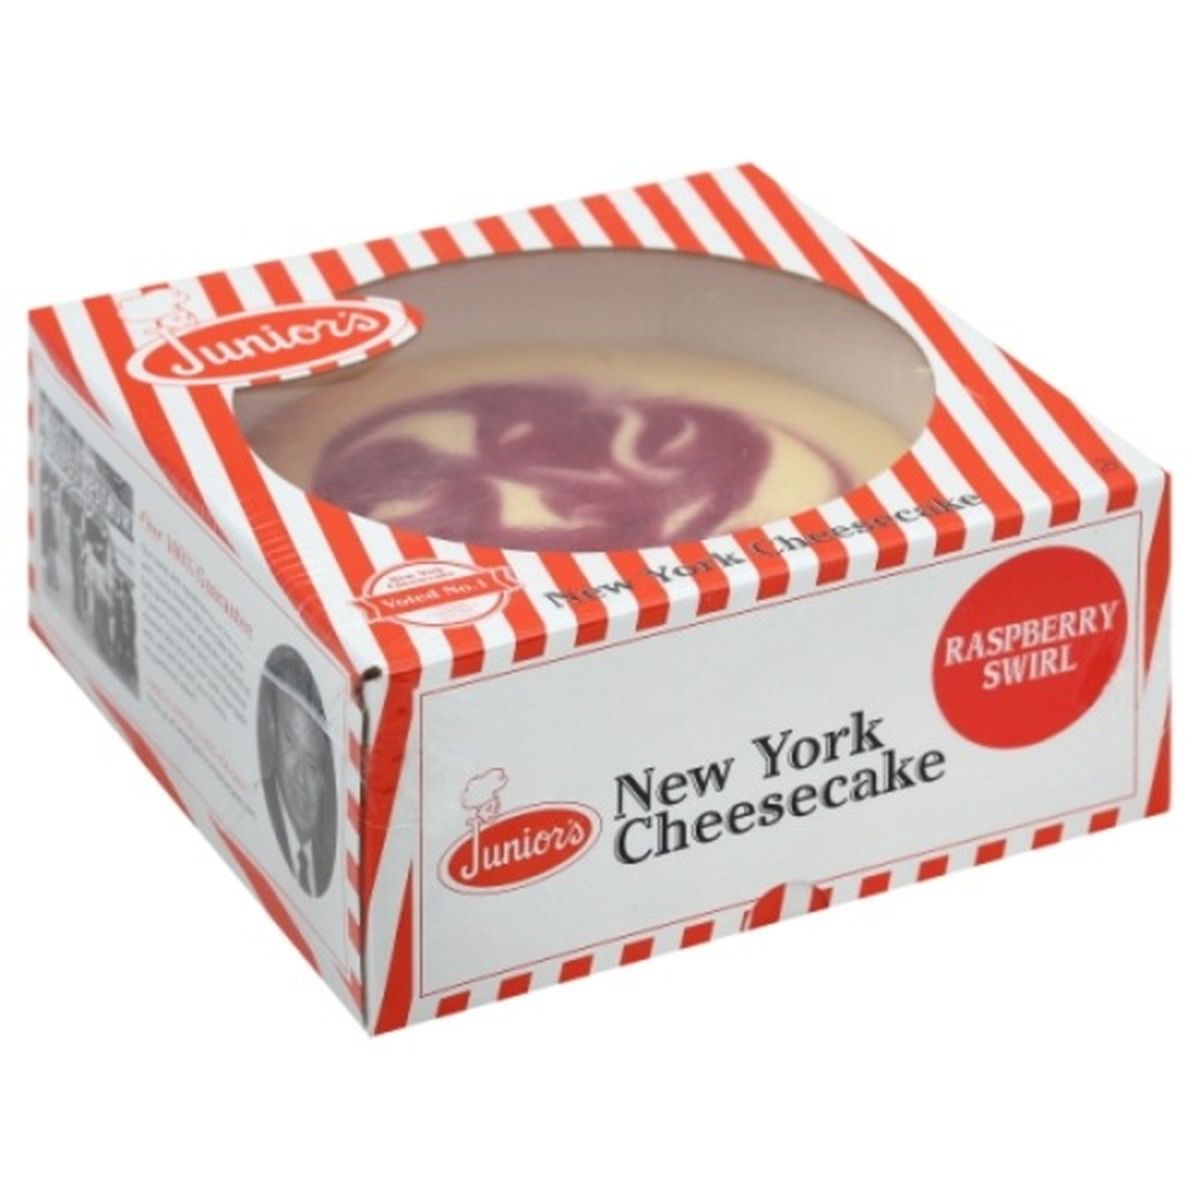 Calories in Junior's Cheesecake, New York, Raspberry Swirl, 6 Inch